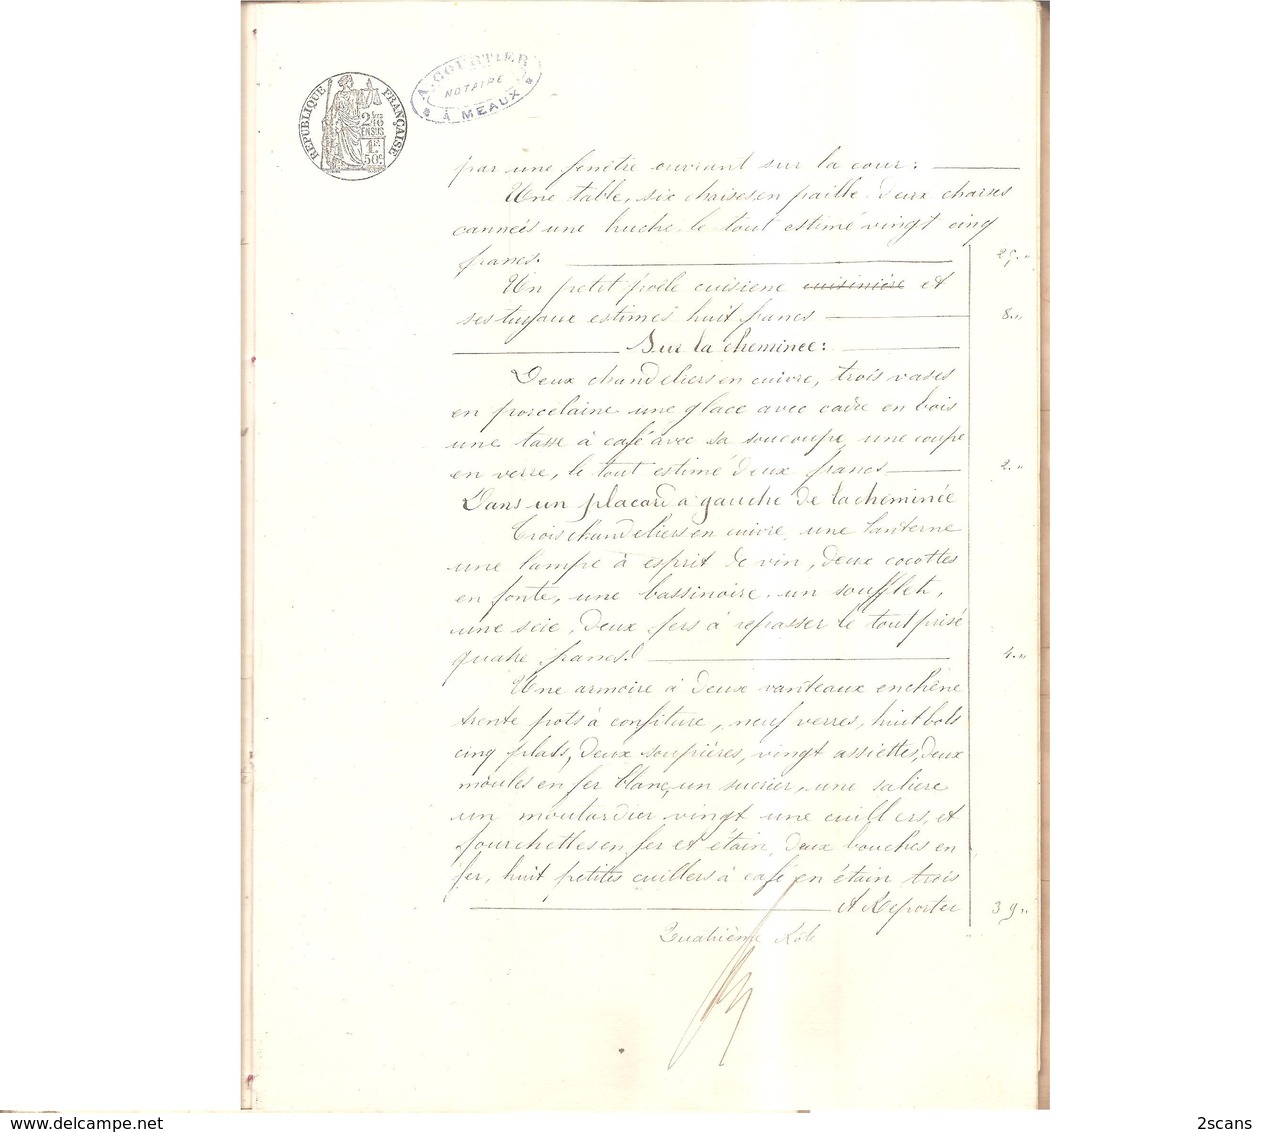 77 - VILLENOY - Inventaire après décès de Madame BOURETTE (née GERMAIN) - 21 Mars 1890 - Maître COURTIER Notaire à Meaux